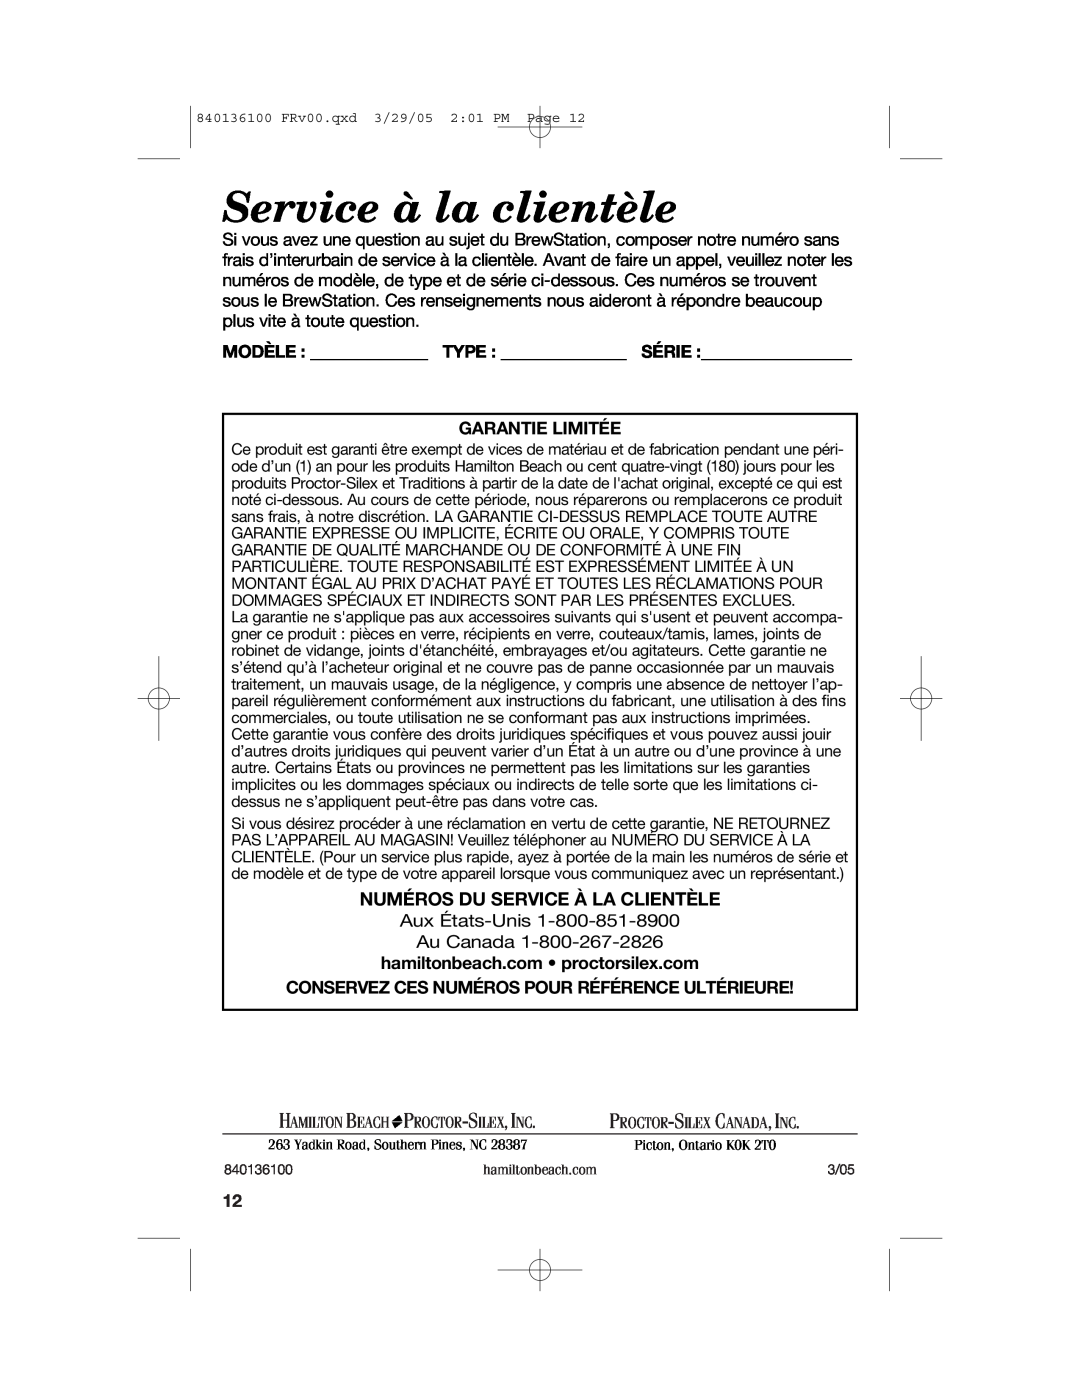 Hamilton Beach 840136100 Service à la clientèle, Numéros Du Service À La Clientèle, Modèle Type Série Garantie Limitée 